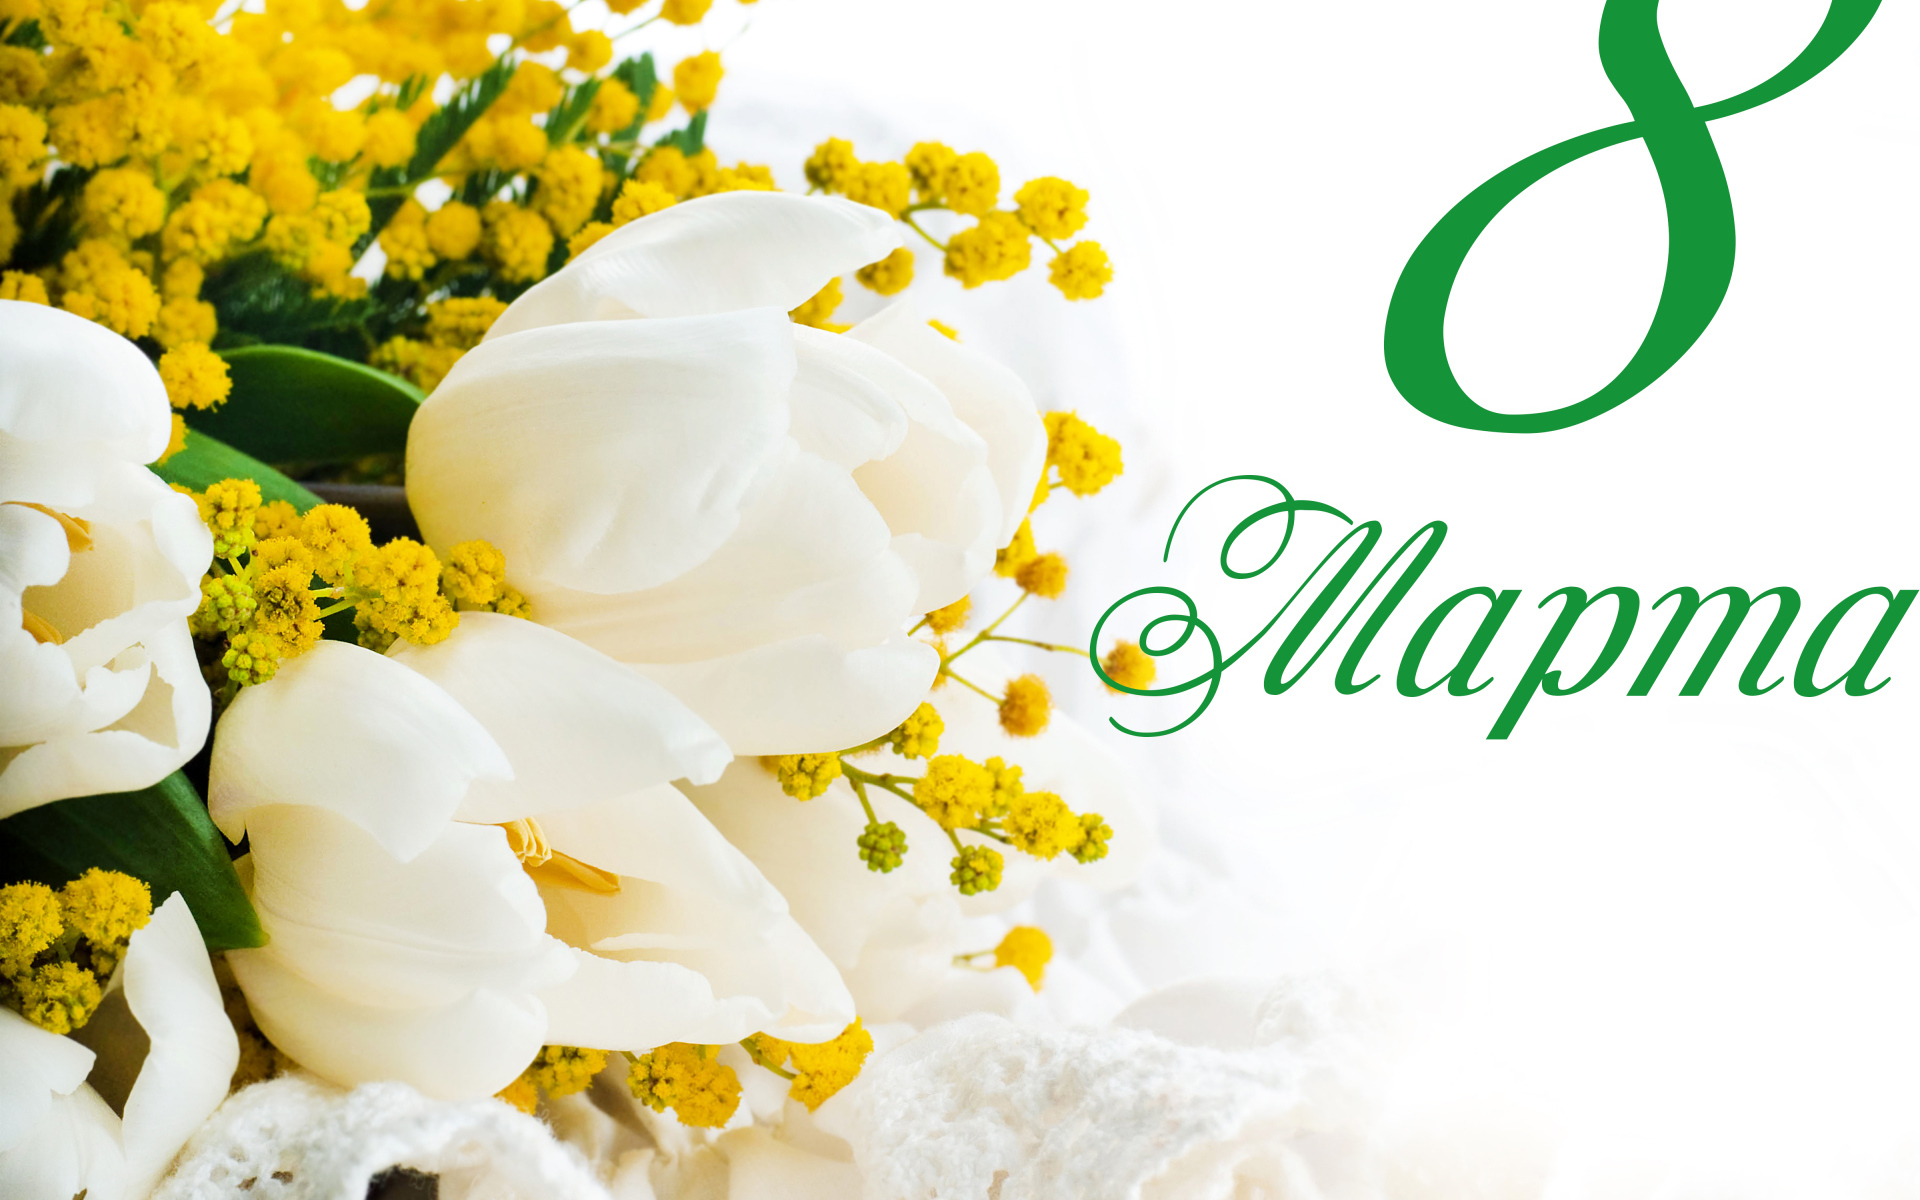 Белые тюльпаны и желтые цветы мимозы на белом фоне на Международный женский день 8 марта